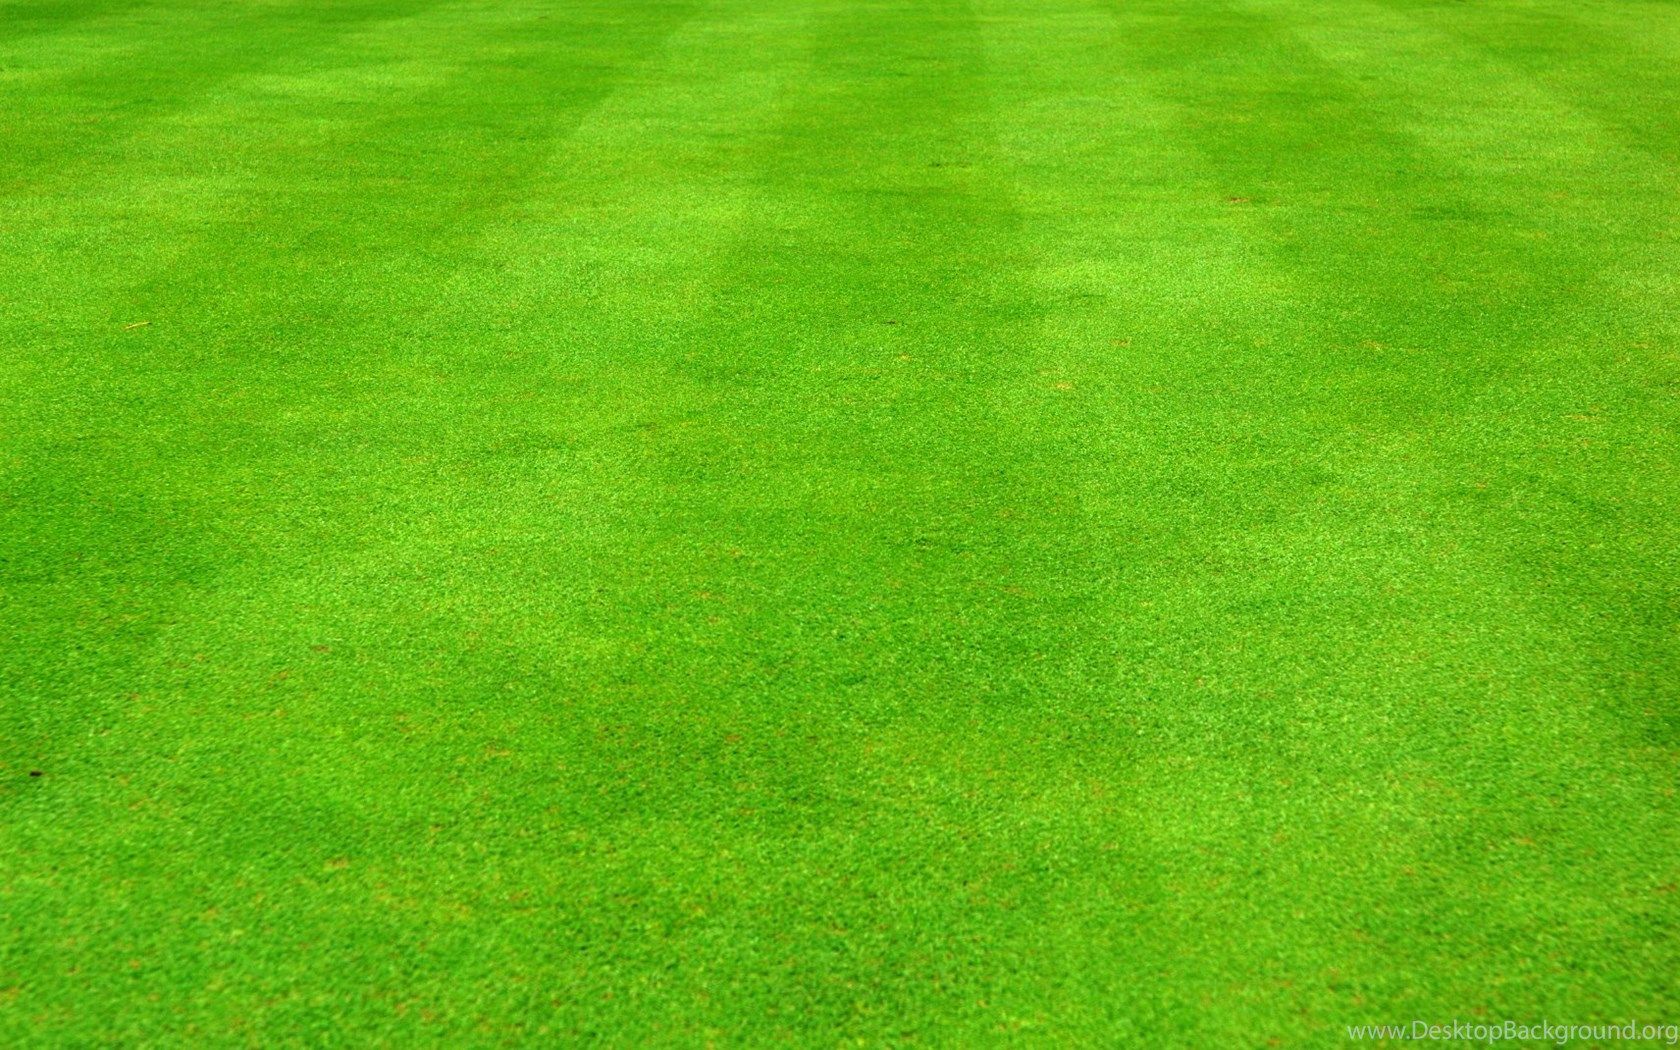 1680x1050 Grass Football Field Wallpaper Desktop Background